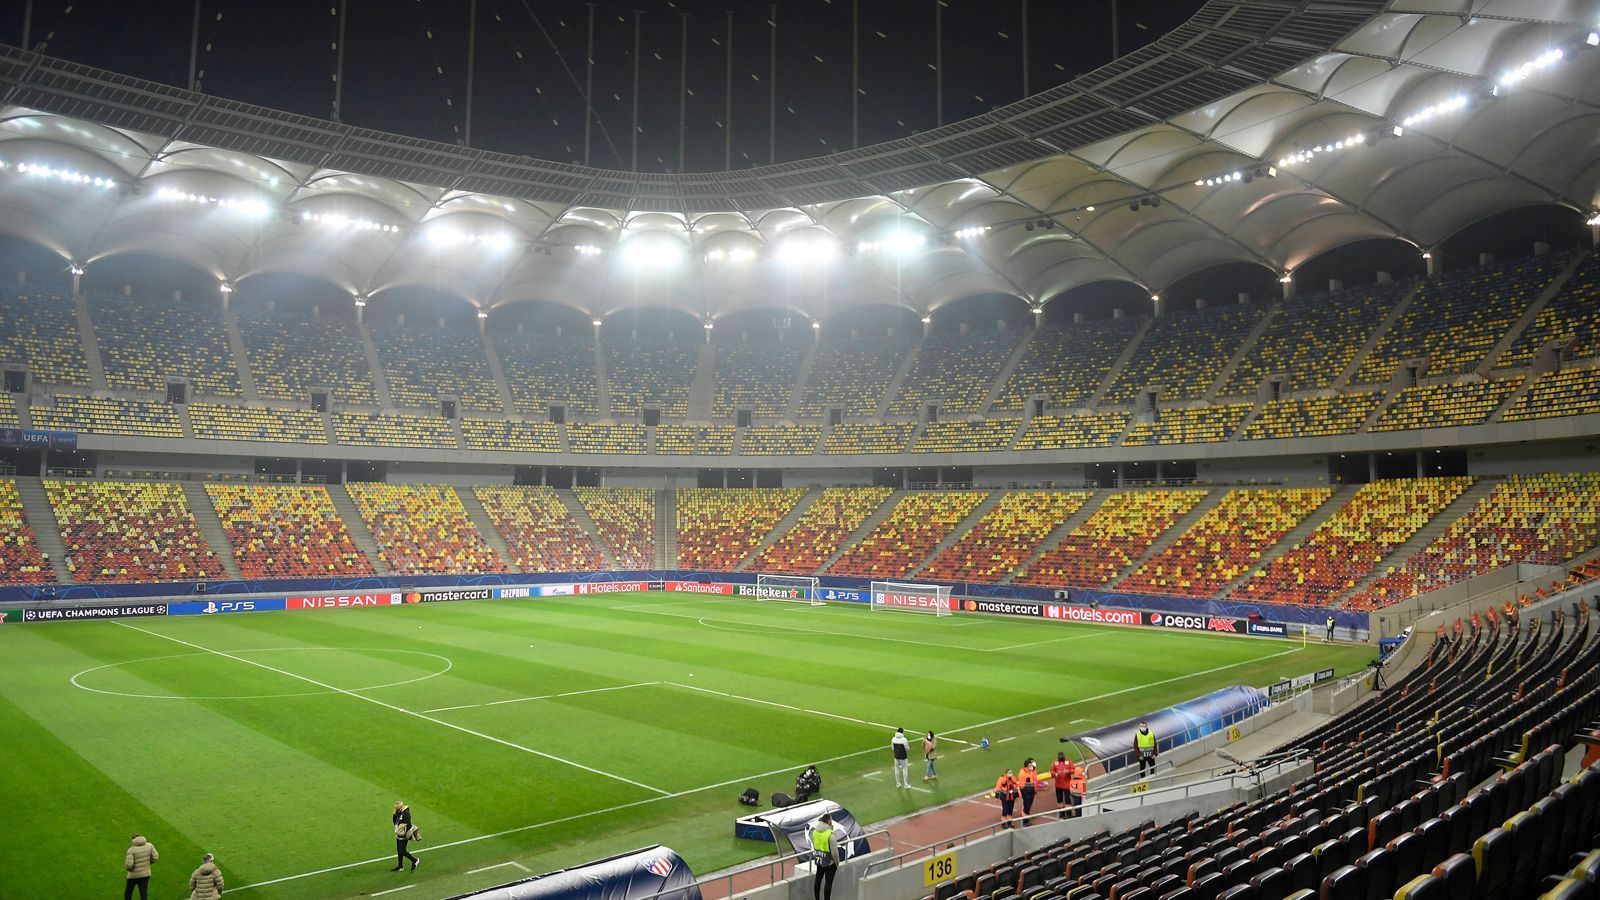 
                <strong>Bukarest - Arena Nationala</strong><br>
                &#x2022; Kapazität: 54.000 - <br>&#x2022; Auslastung: ca. 25 Prozent (rund 13.000) - Kapazität könnte noch ansteigen<br>
              